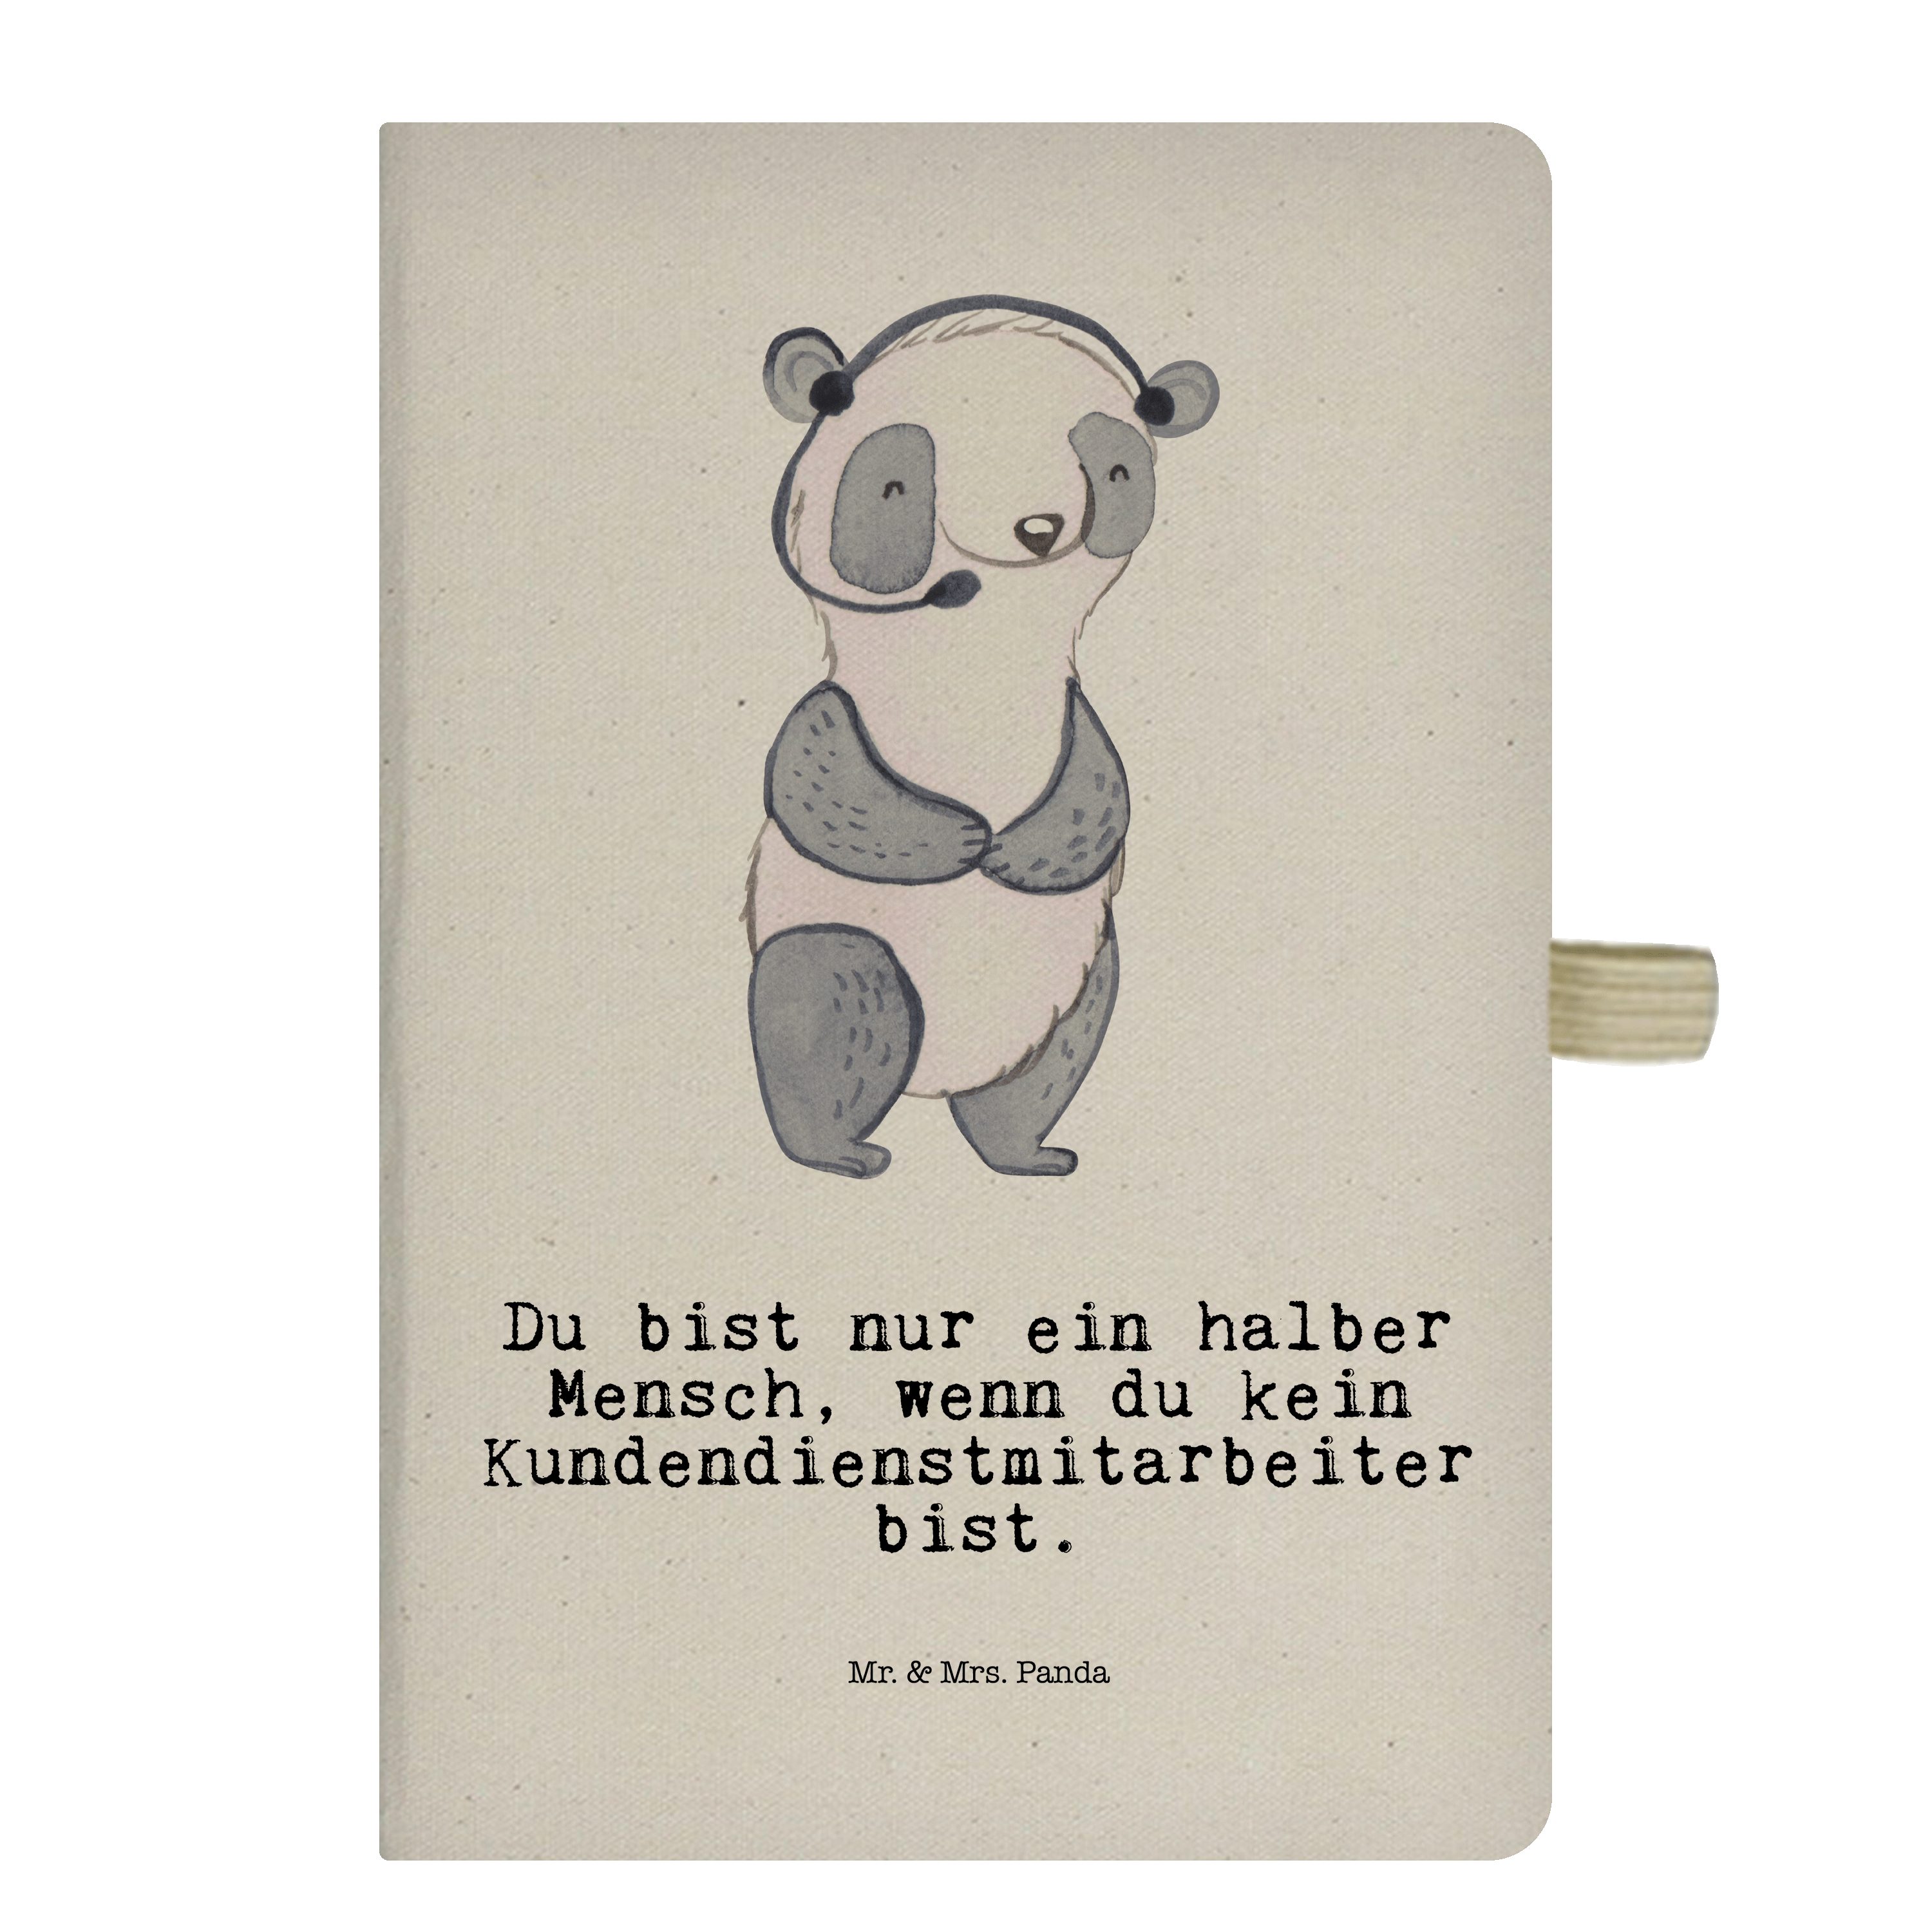 Mr. & Mrs. Panda Notizbuch Kundendienstmitarbeiter mit Herz - Transparent - Geschenk, Notizen, c Mr. & Mrs. Panda